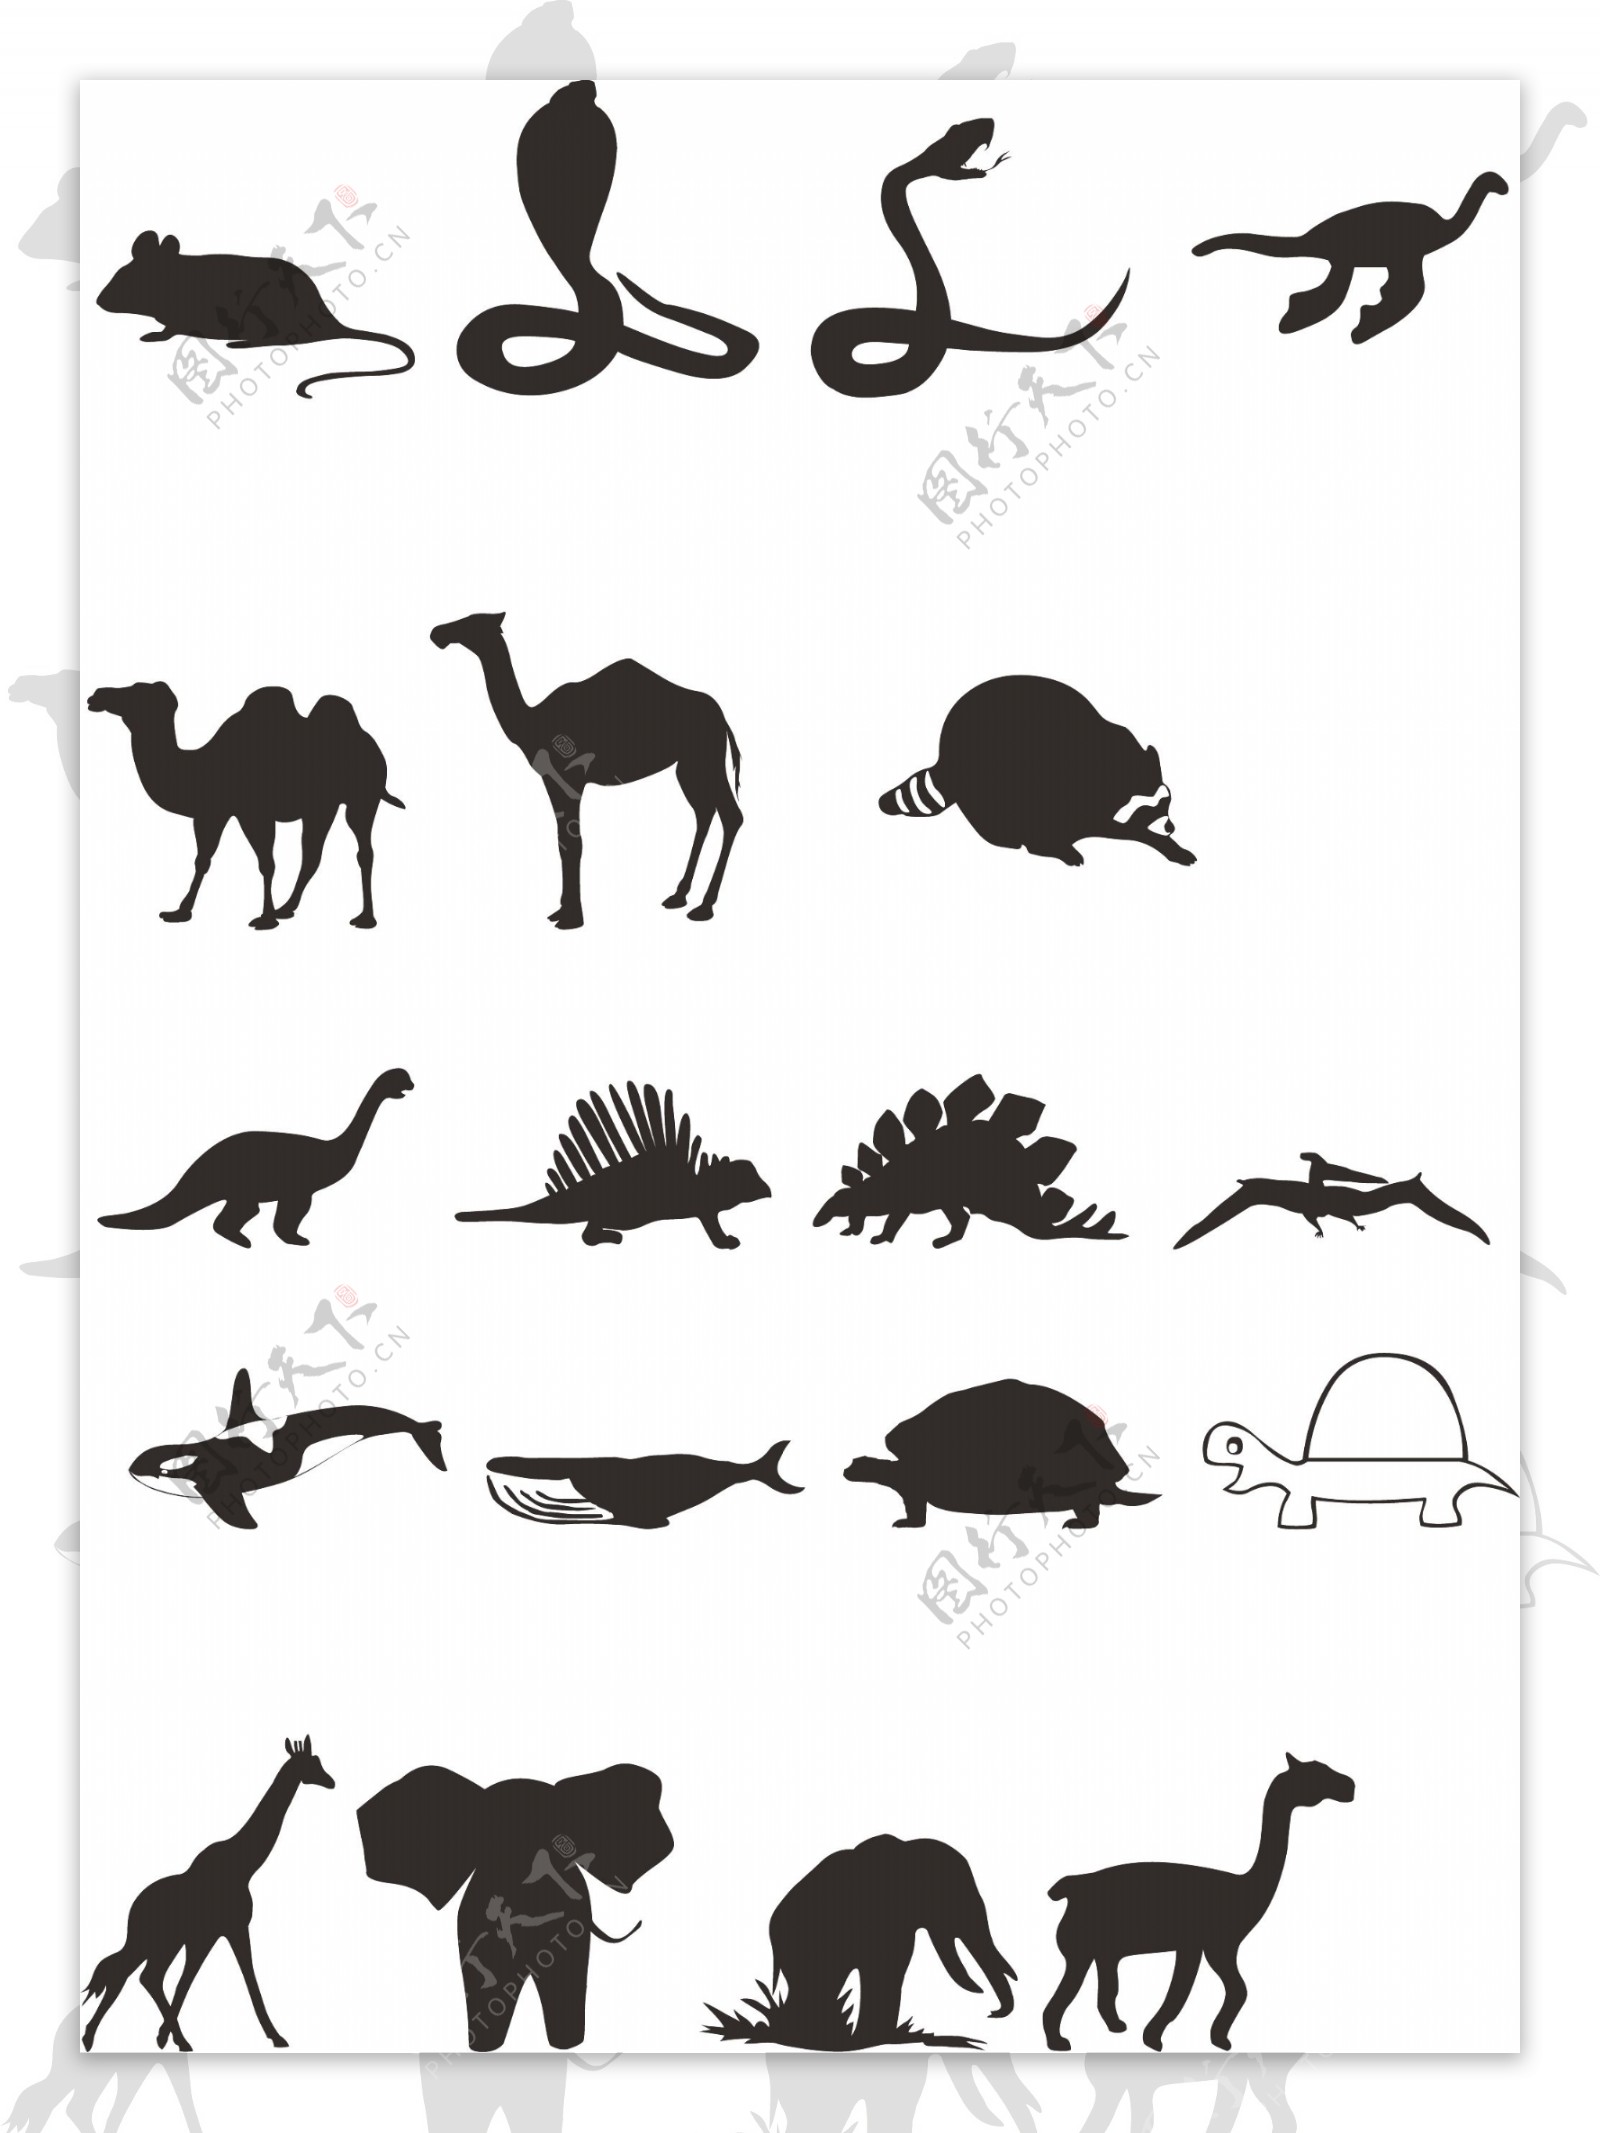 眼镜蛇蛇骆驼恐龙大象图片